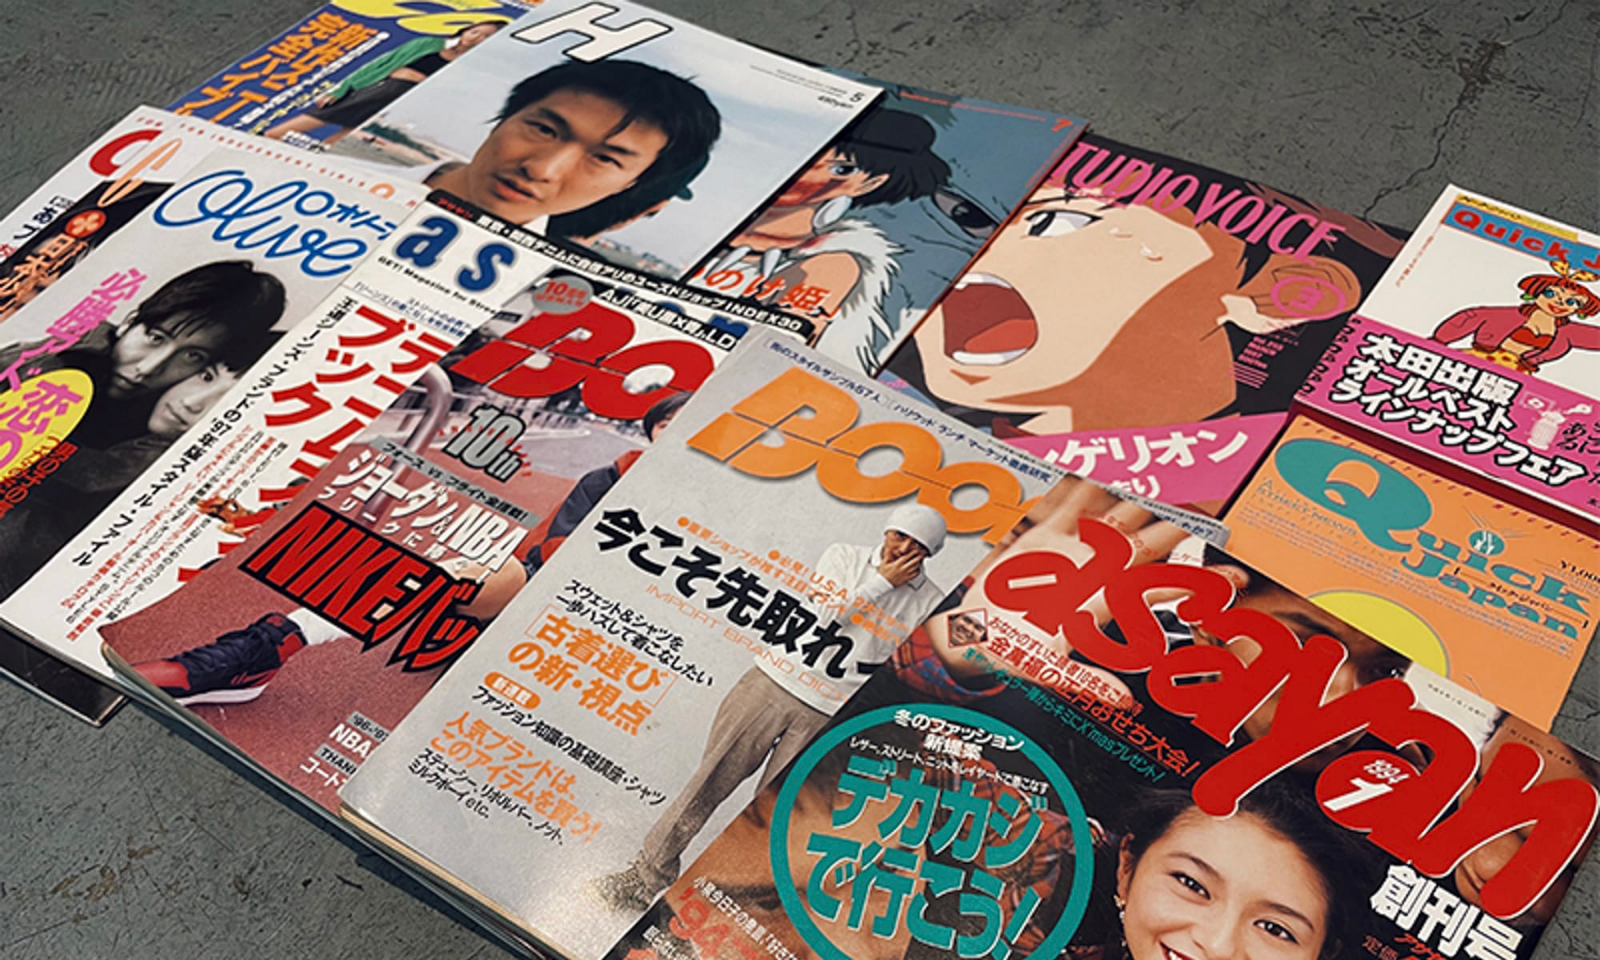 代官山茑屋书店将举办 1990 年代时尚文化杂志展